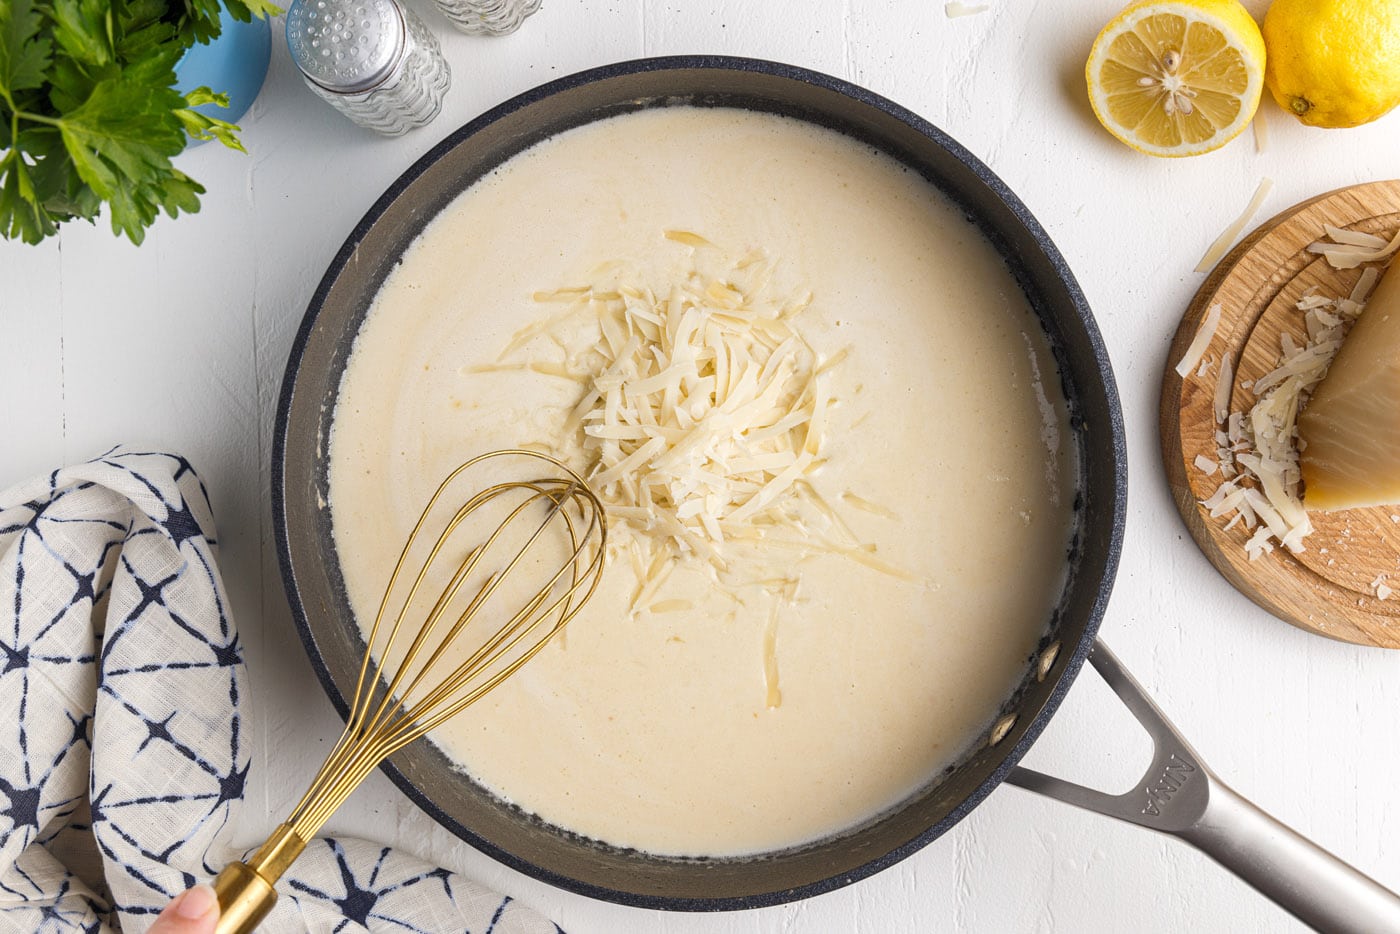 whisking parmesan cheese into creamy lemon garlic sauce